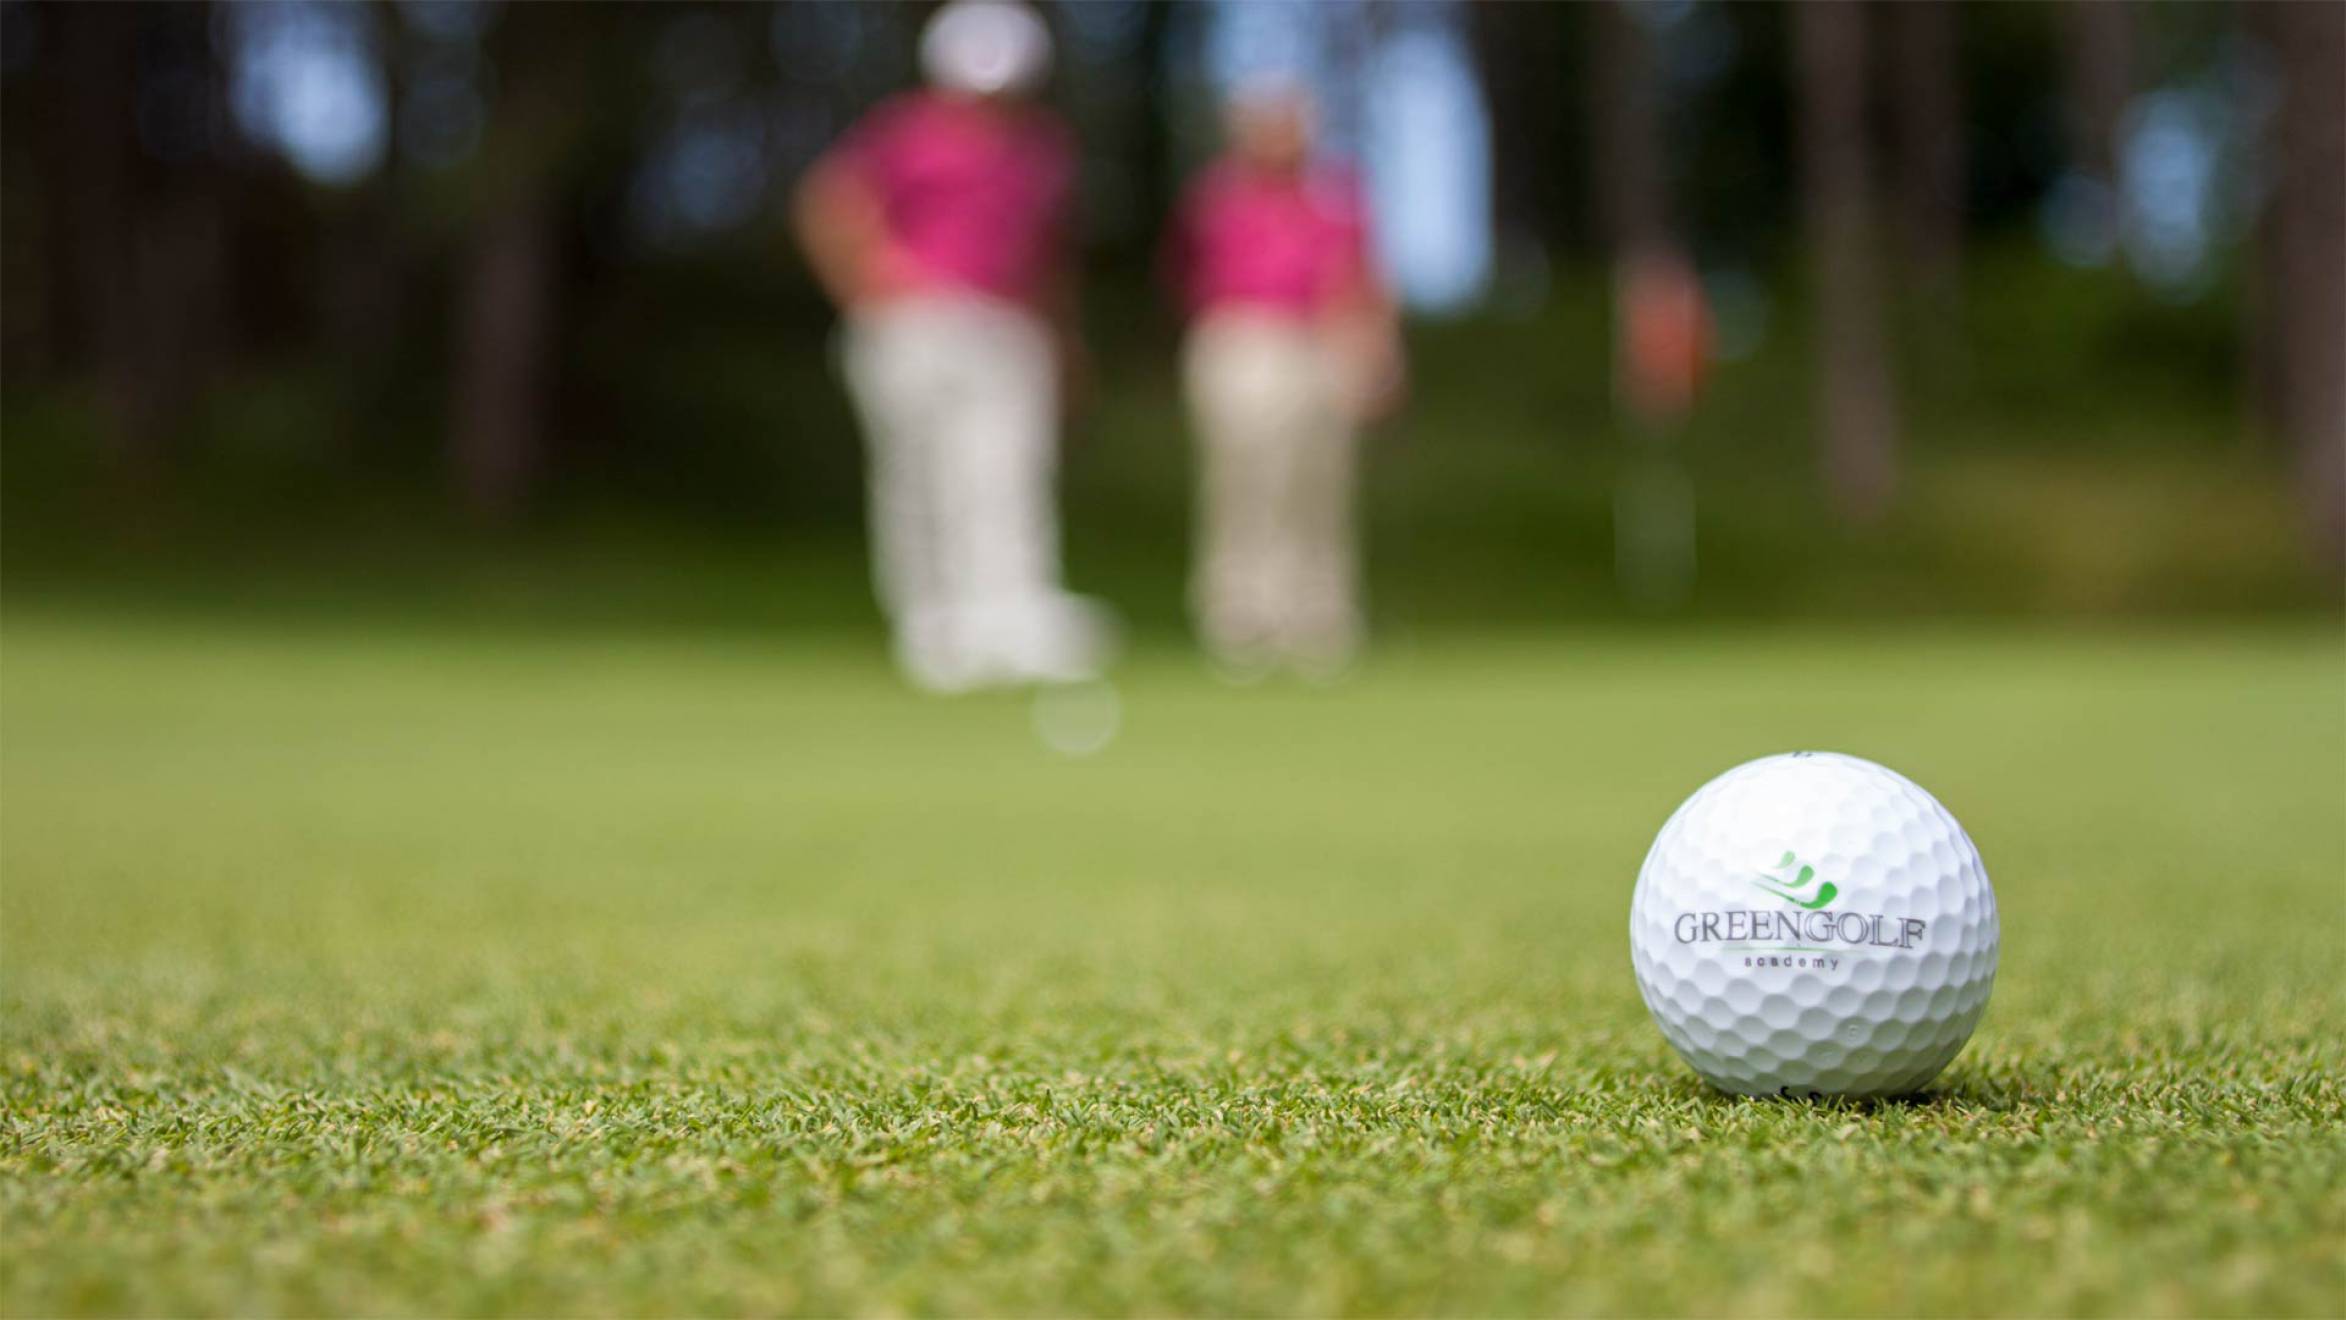 Realizzazione servizio fotografico Green Golf Academy NewVisibility